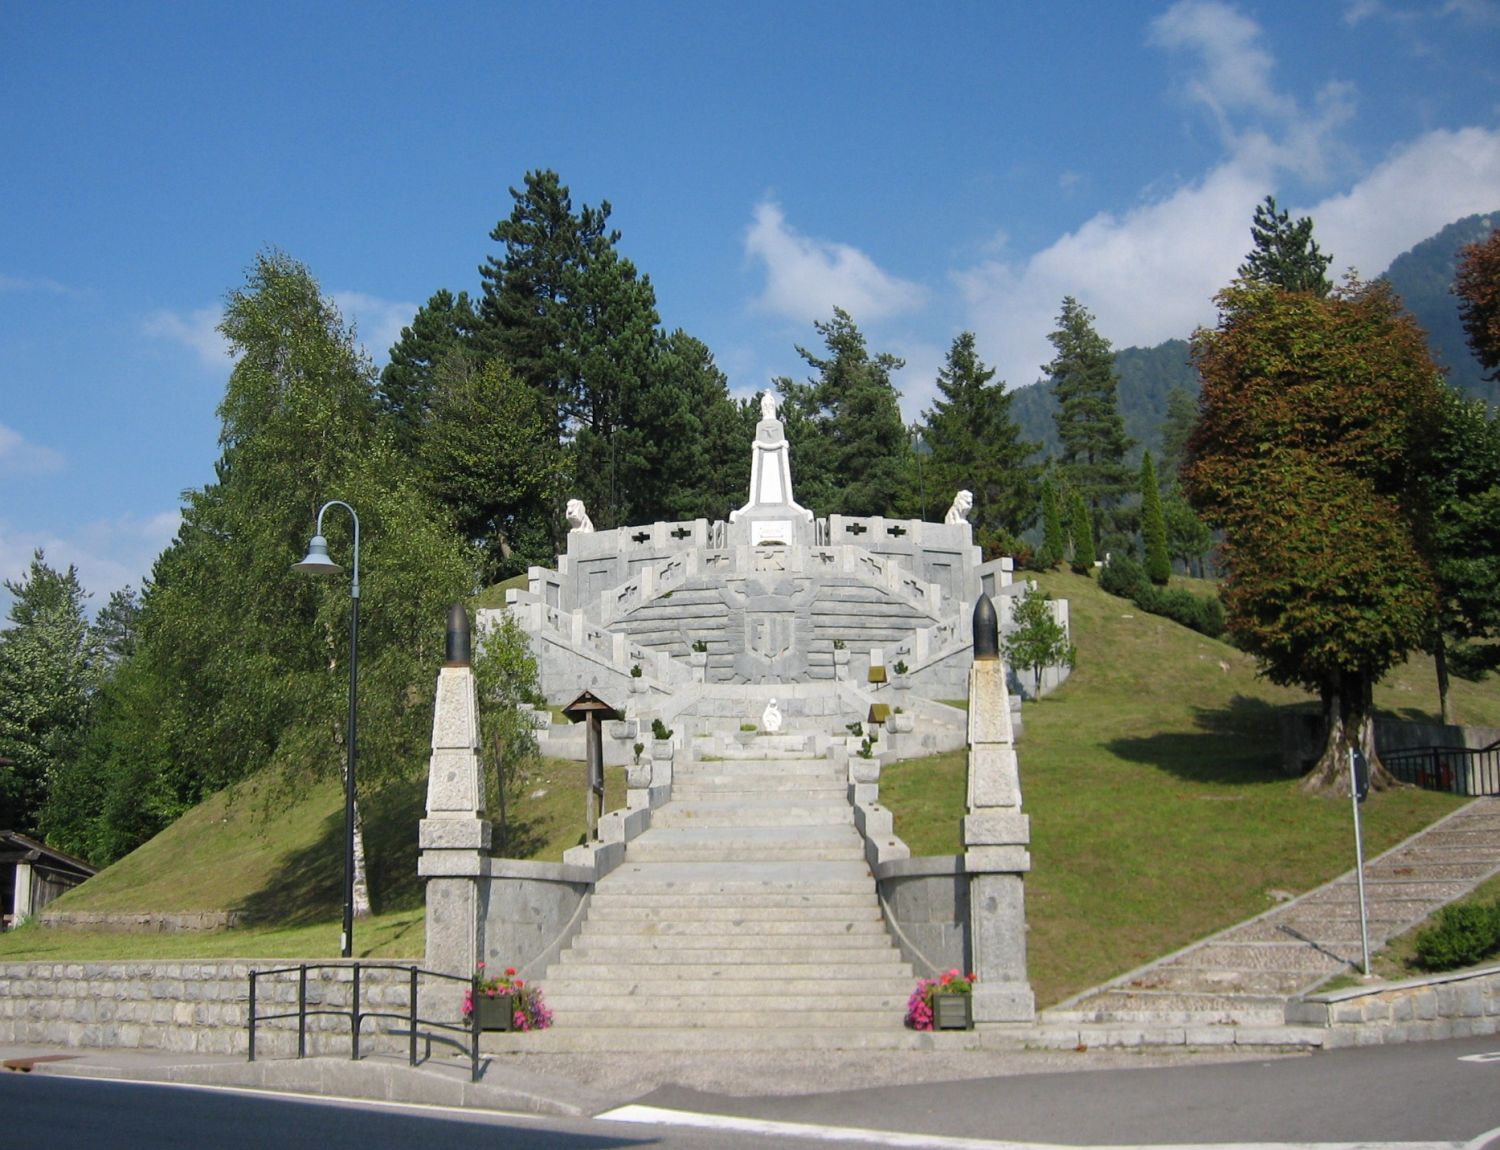 Das Monument und der Soldatenfriedhof in Bondo, Trentino